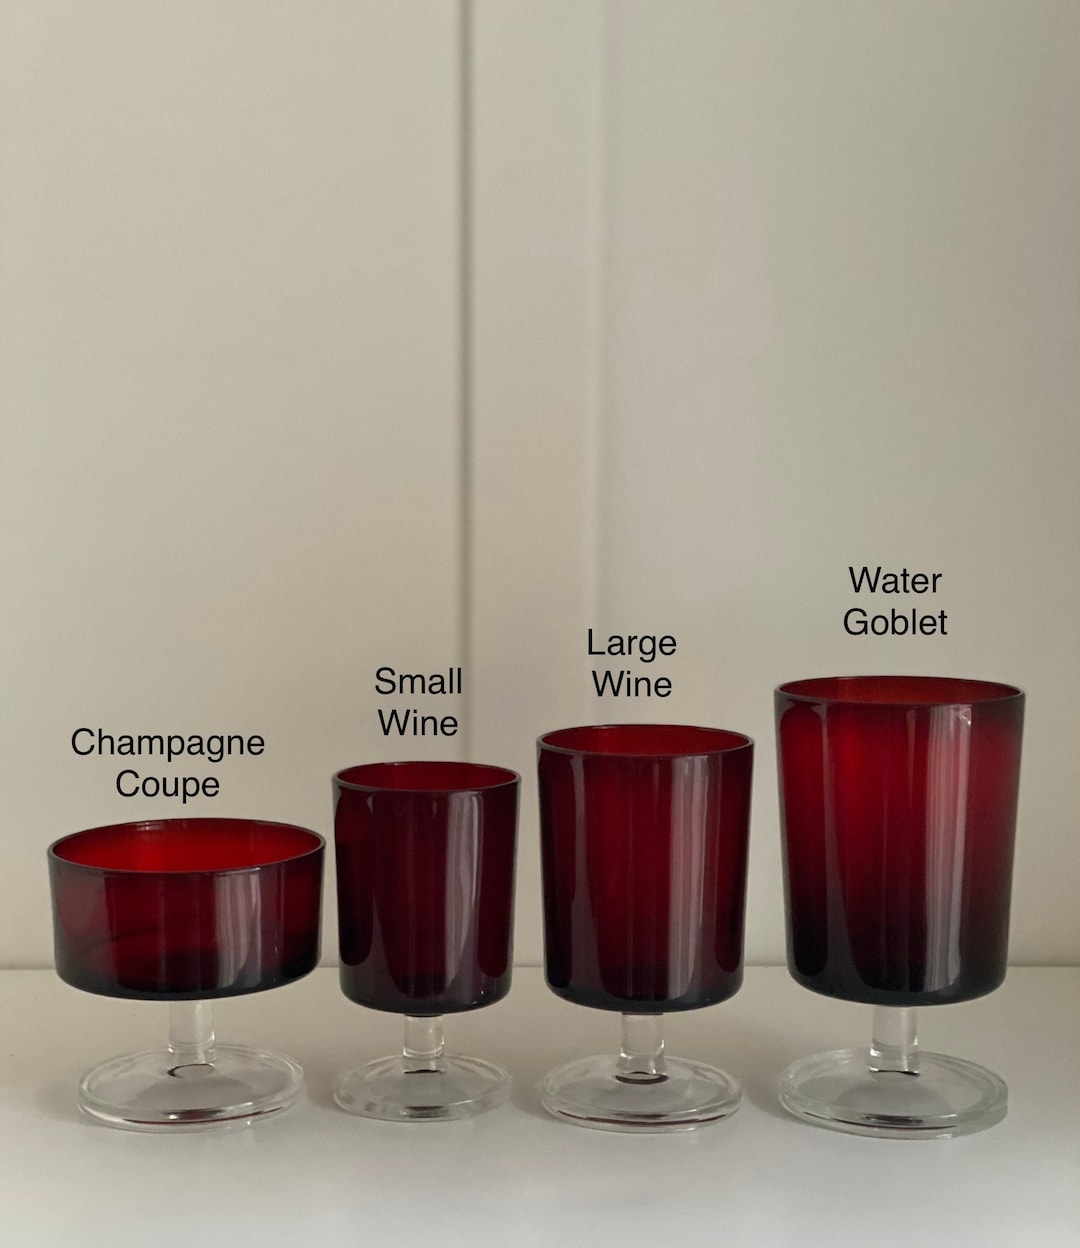 Vikko Décor Copper Ombre Red Wine Glasses